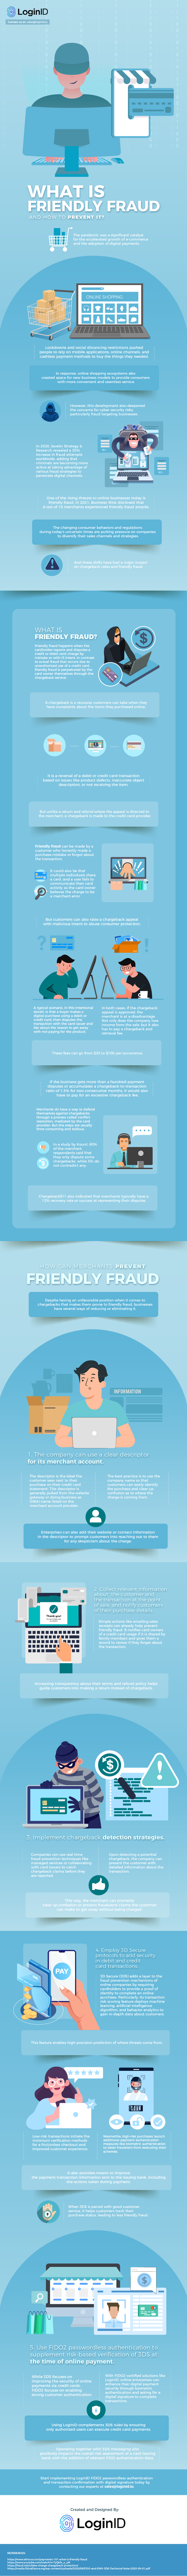 Friendly fraud - 1231daw